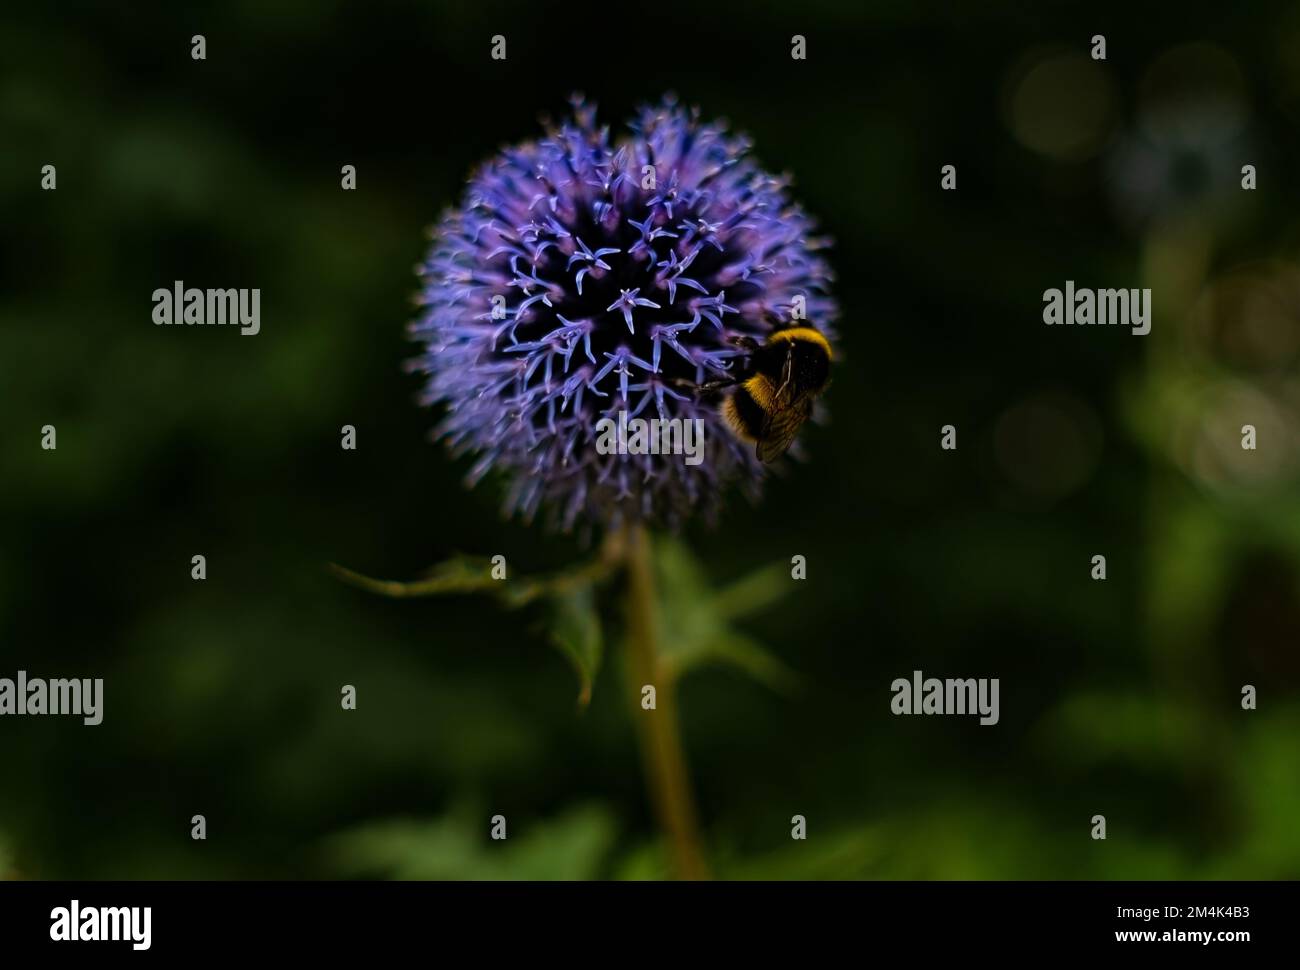 La foto presenta un allio viola scuro con una vespa, scattata a Londra, Inghilterra. Il colore vivace del fiore contrasta. Allio viola scuro, insetto, Foto Stock